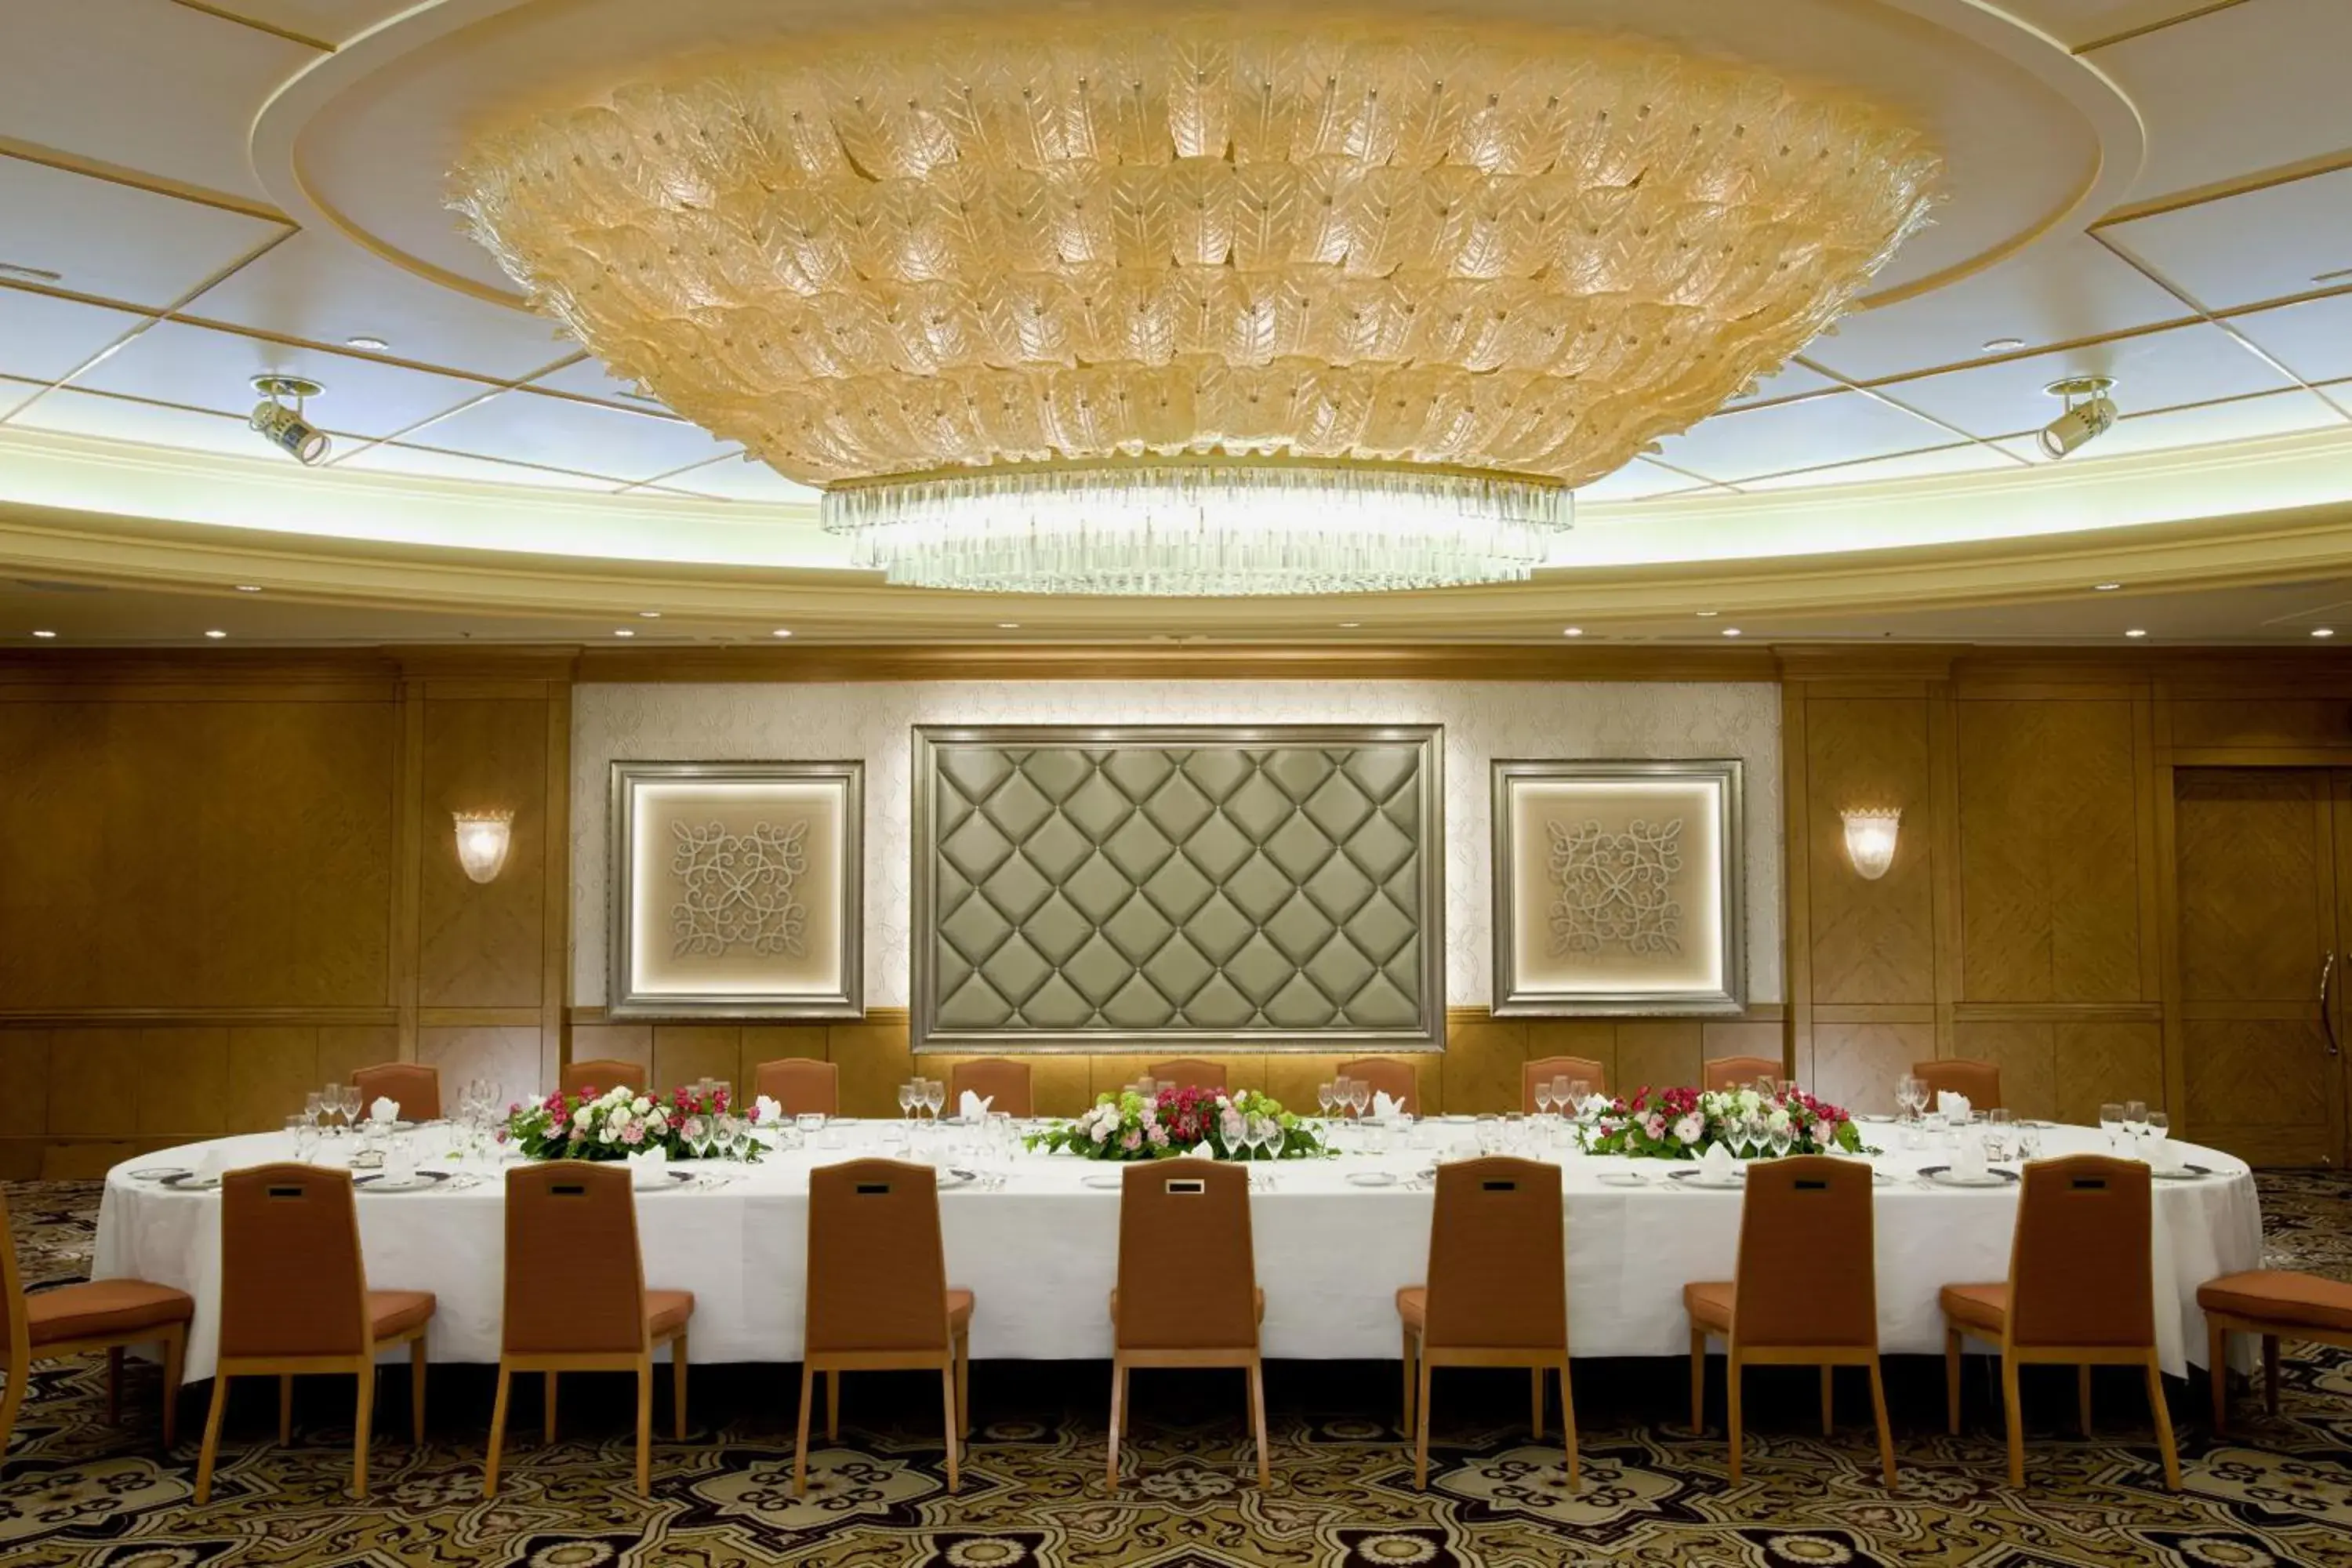 Banquet/Function facilities, Banquet Facilities in Hotel Okura Fukuoka